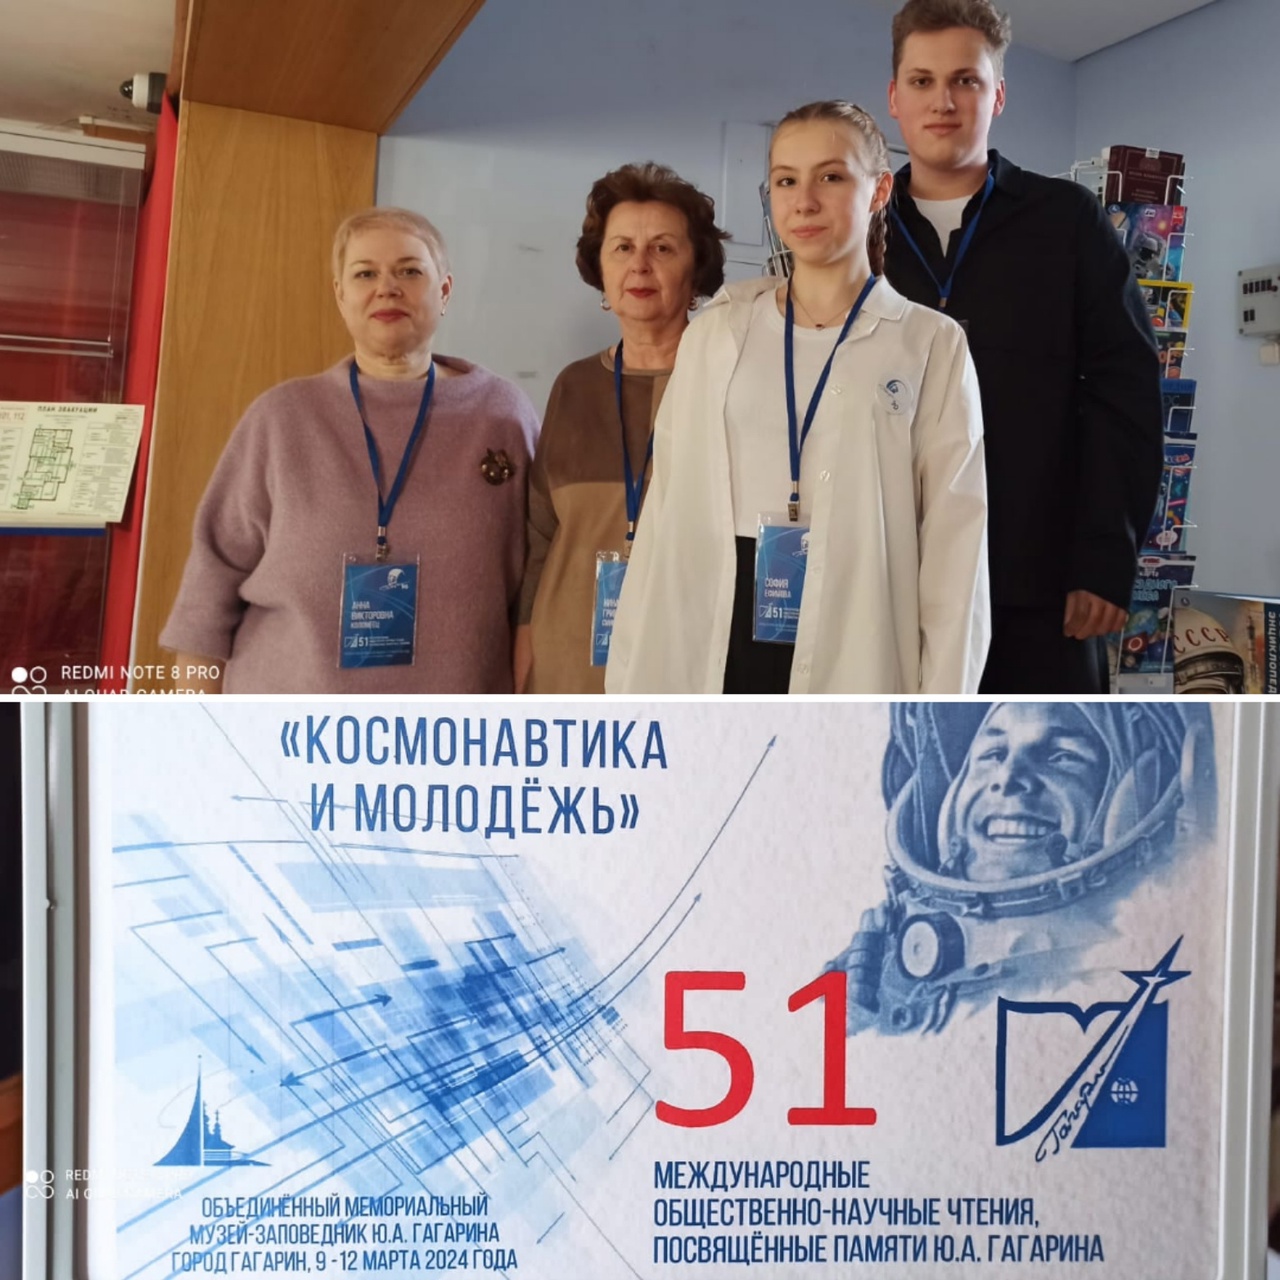 Участие в Молодежной секции 51-х Гагаринских общественно-научных чтений.